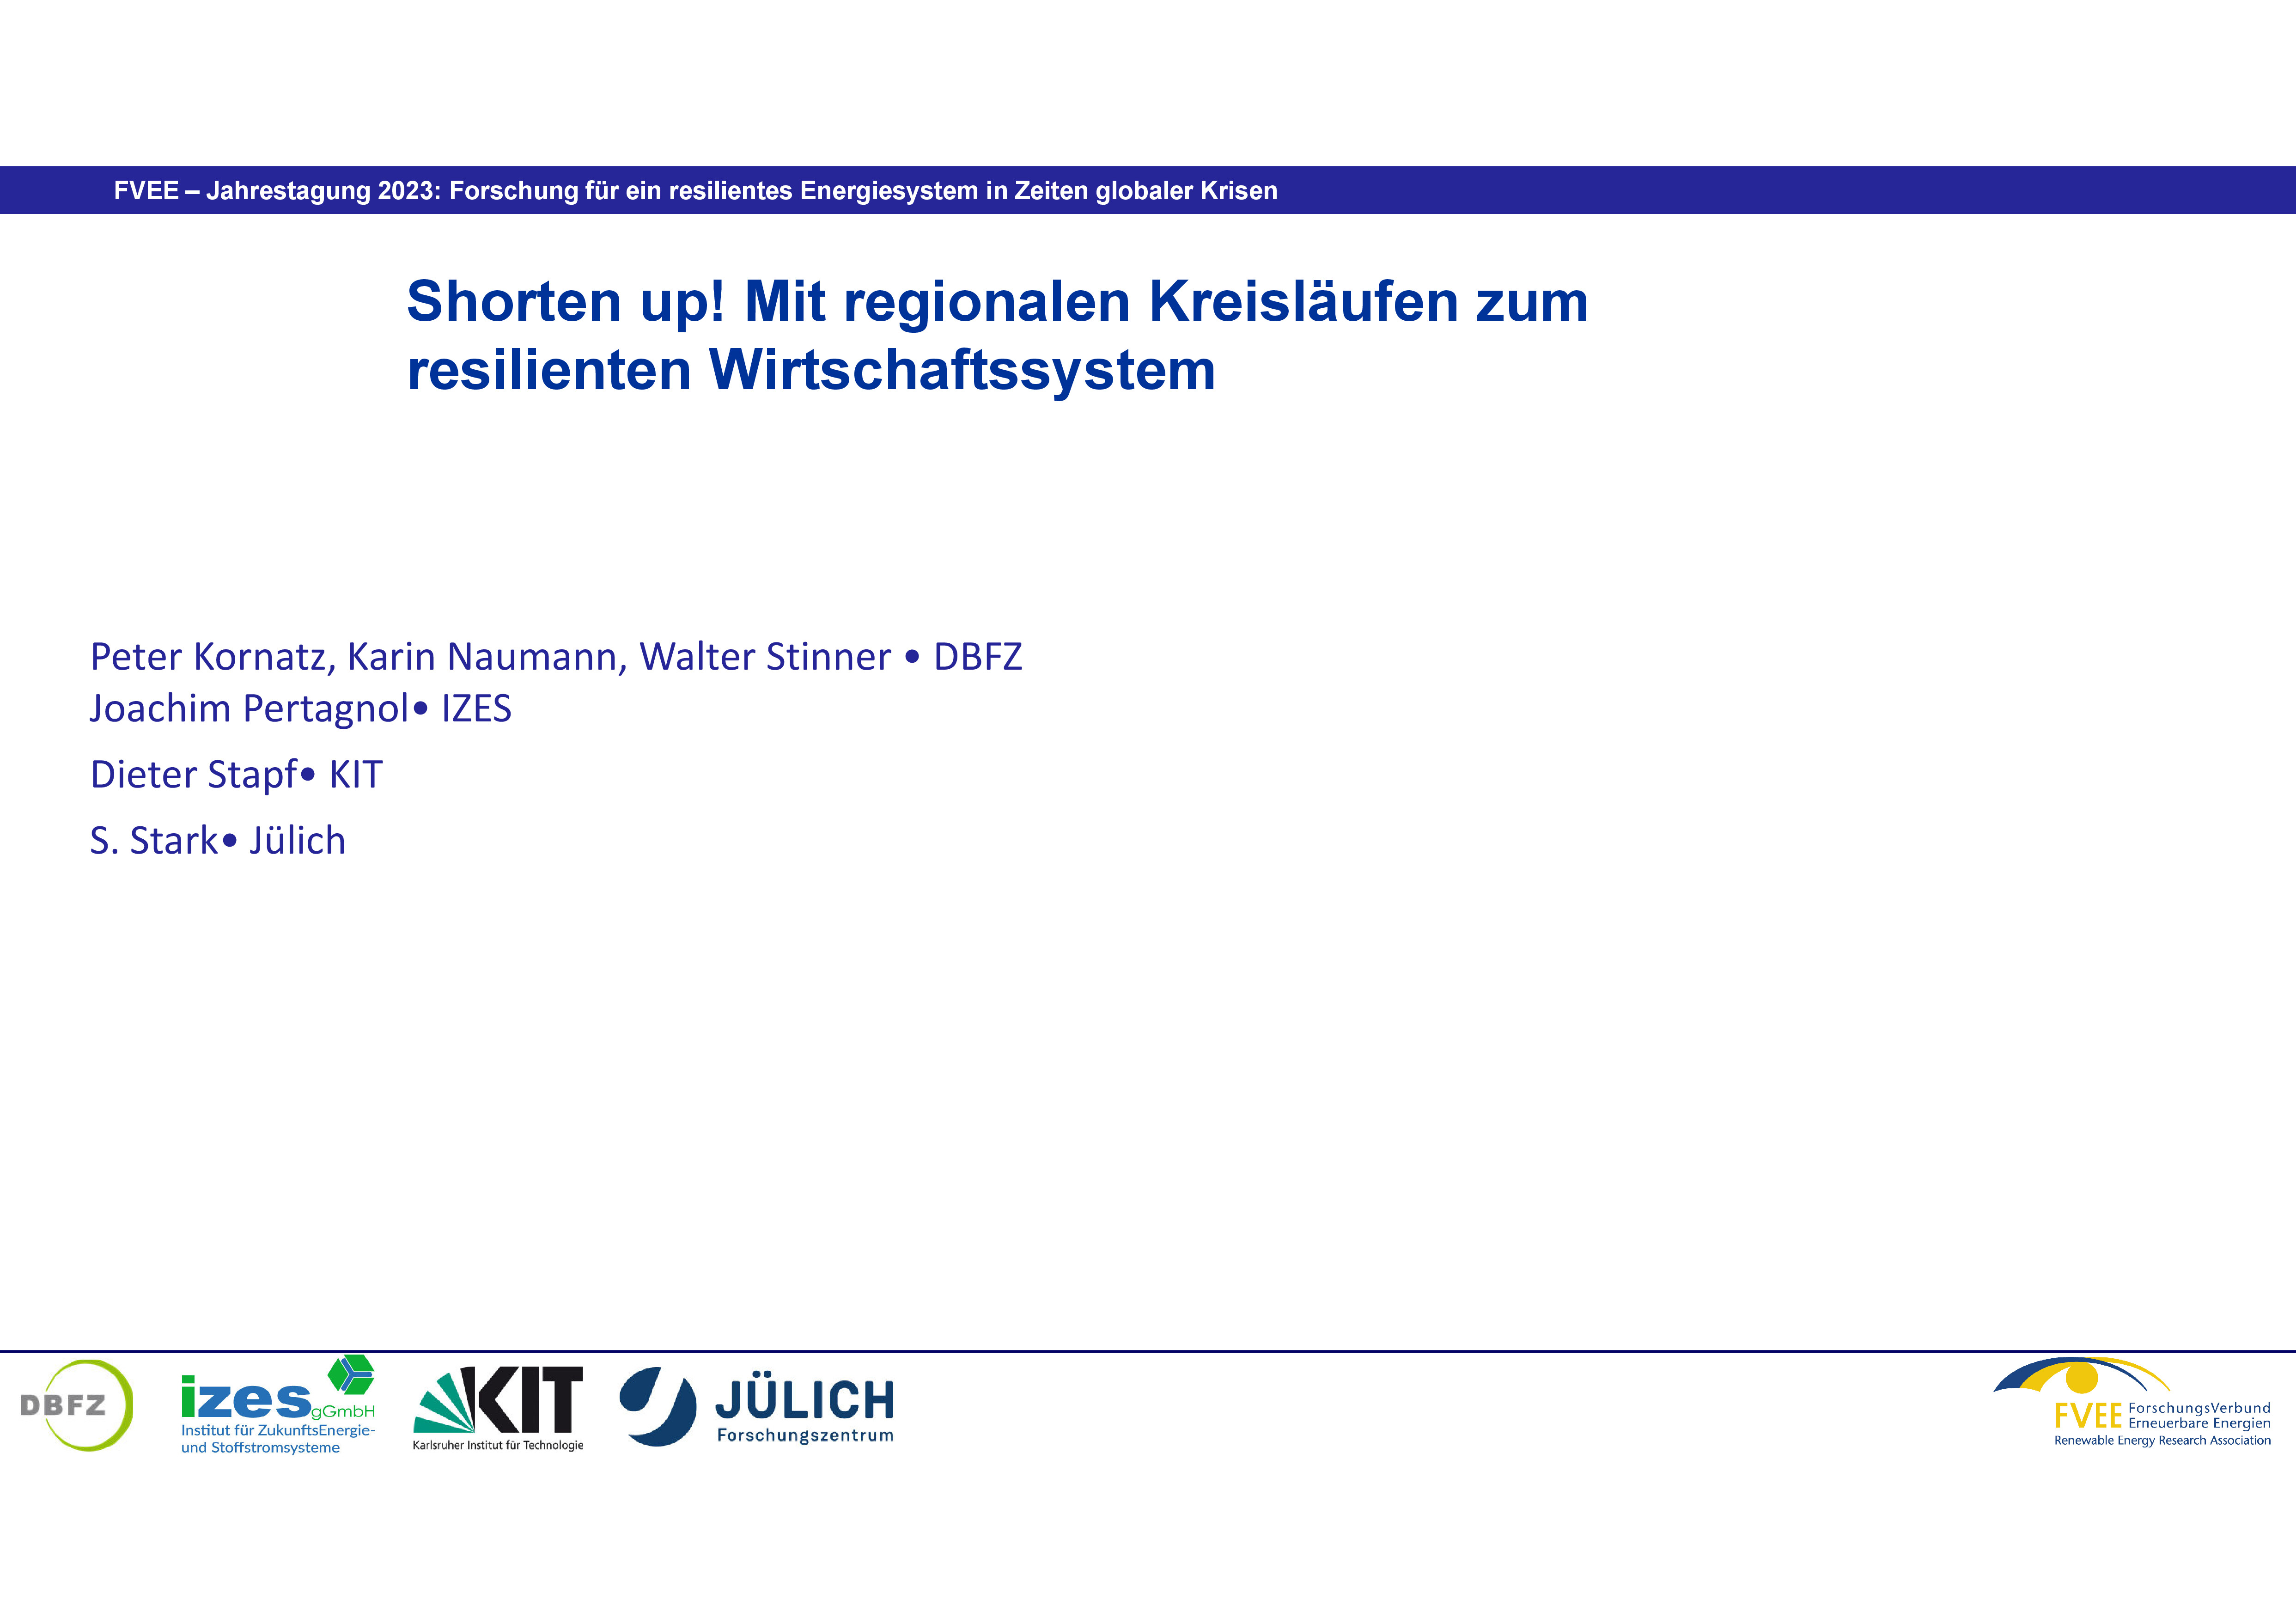 Shorten up! Mit regionalen Kreisläufen zum resilienten Wirtschaftssystem (Kornatz - DBFZ)